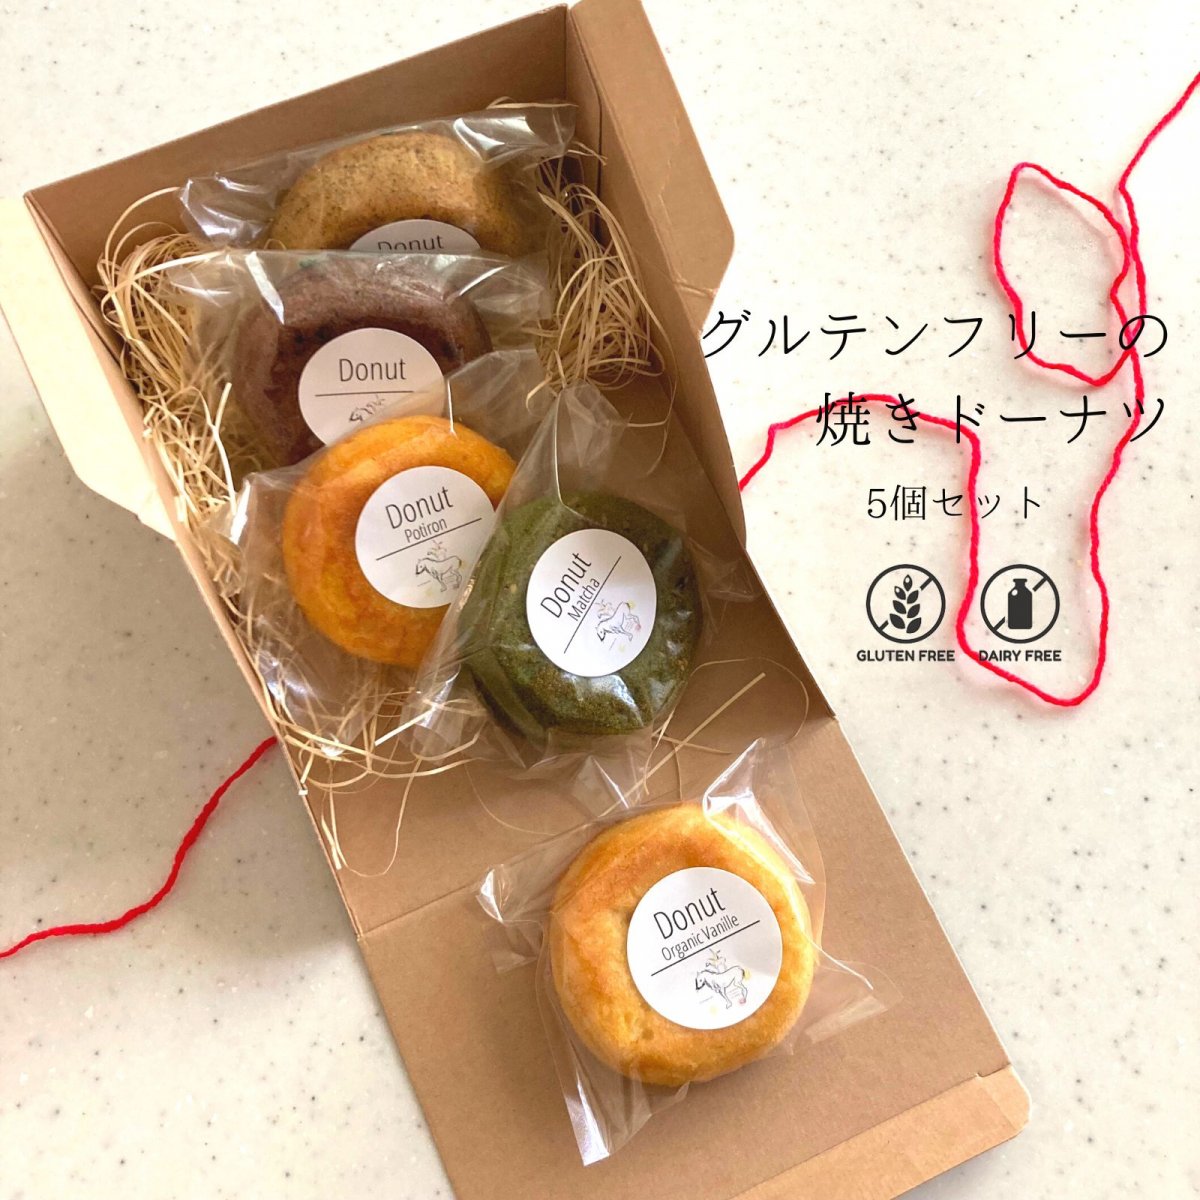 【5個セット】グルテンフリーの焼きドーナツセット / 小麦粉・乳製品不使用